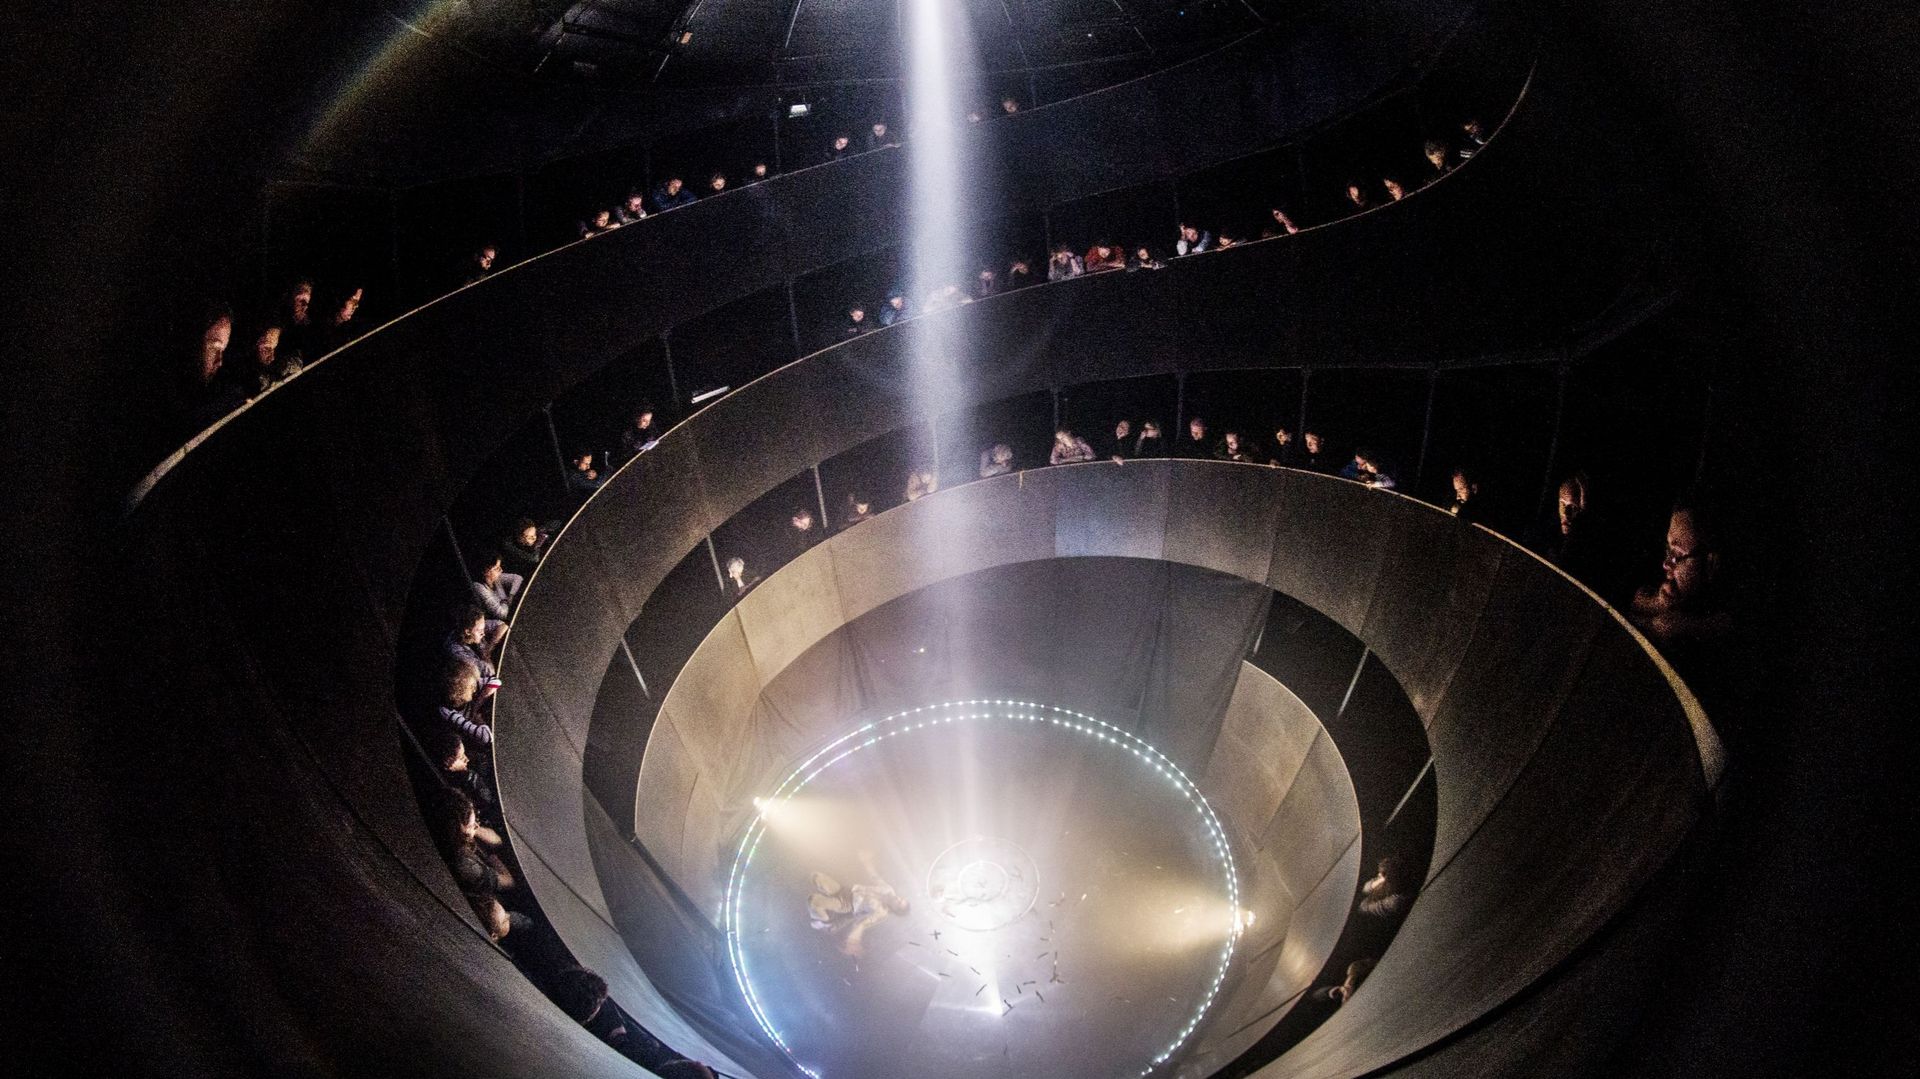 le-spectacle-labsolu-entre-cirque-et-theatre-dans-un-chapiteau-de-12-metres-de-haut-a-marchin